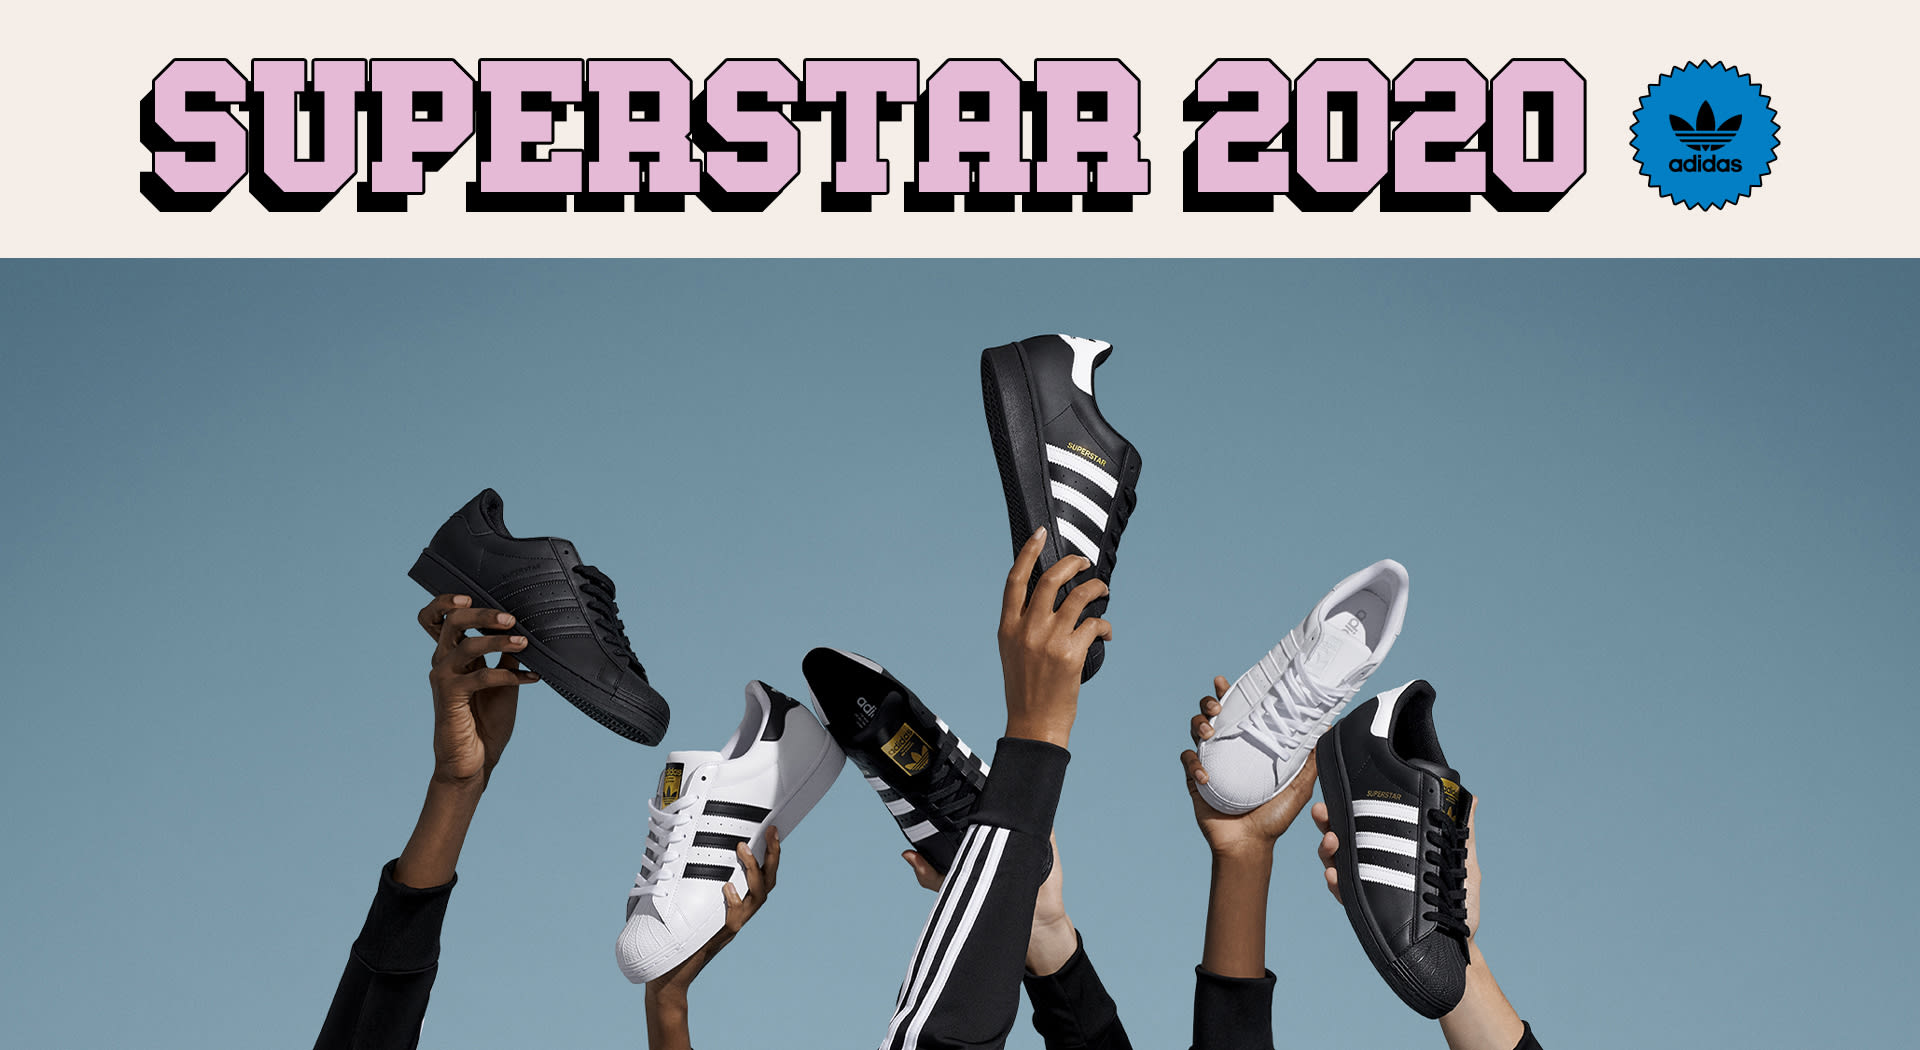 adidas all star 2020